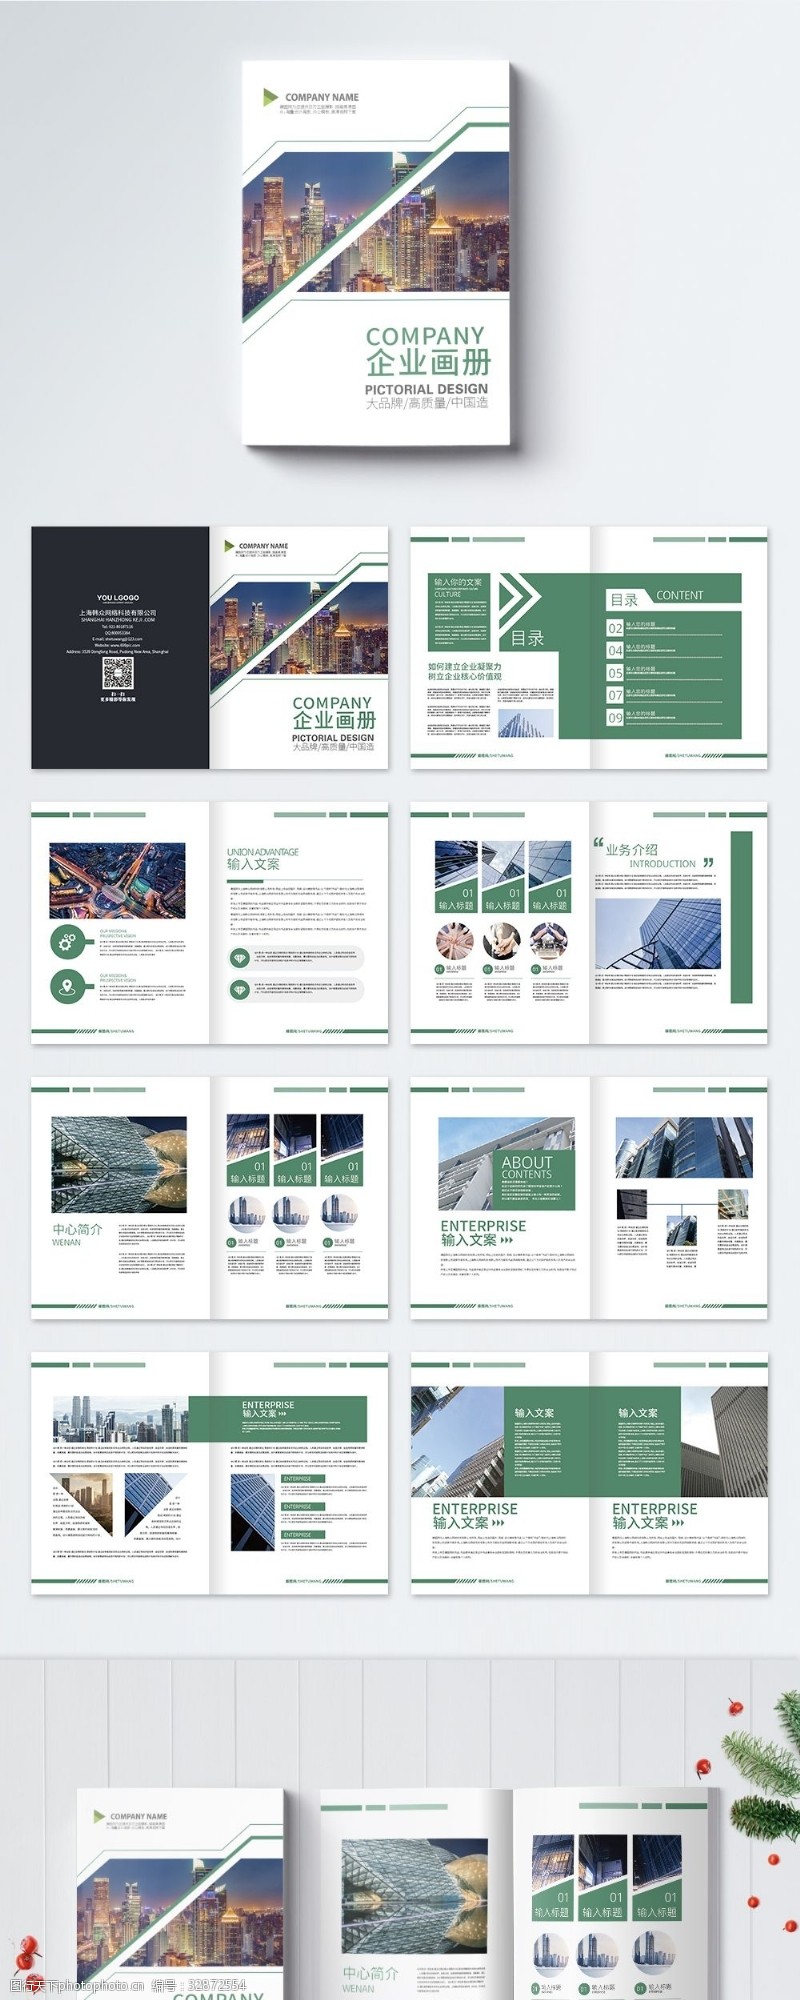 小清新封面绿色简约时尚大气企业通用商务画册